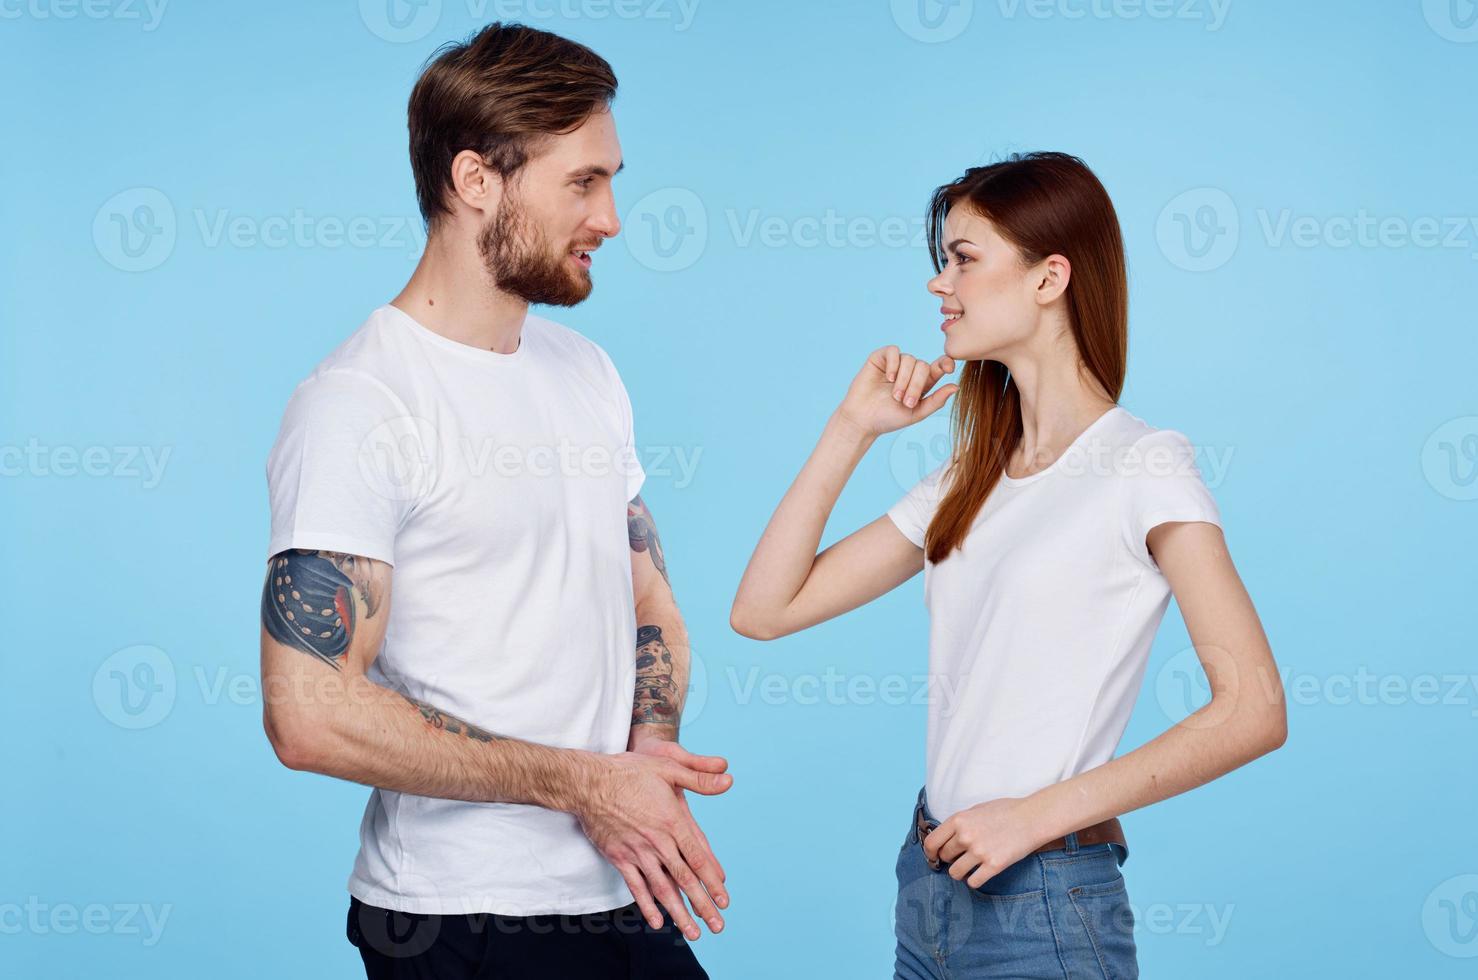 homme avec tatouages suivant à femme la communication sortir ensemble relation amicale moderne modes photo